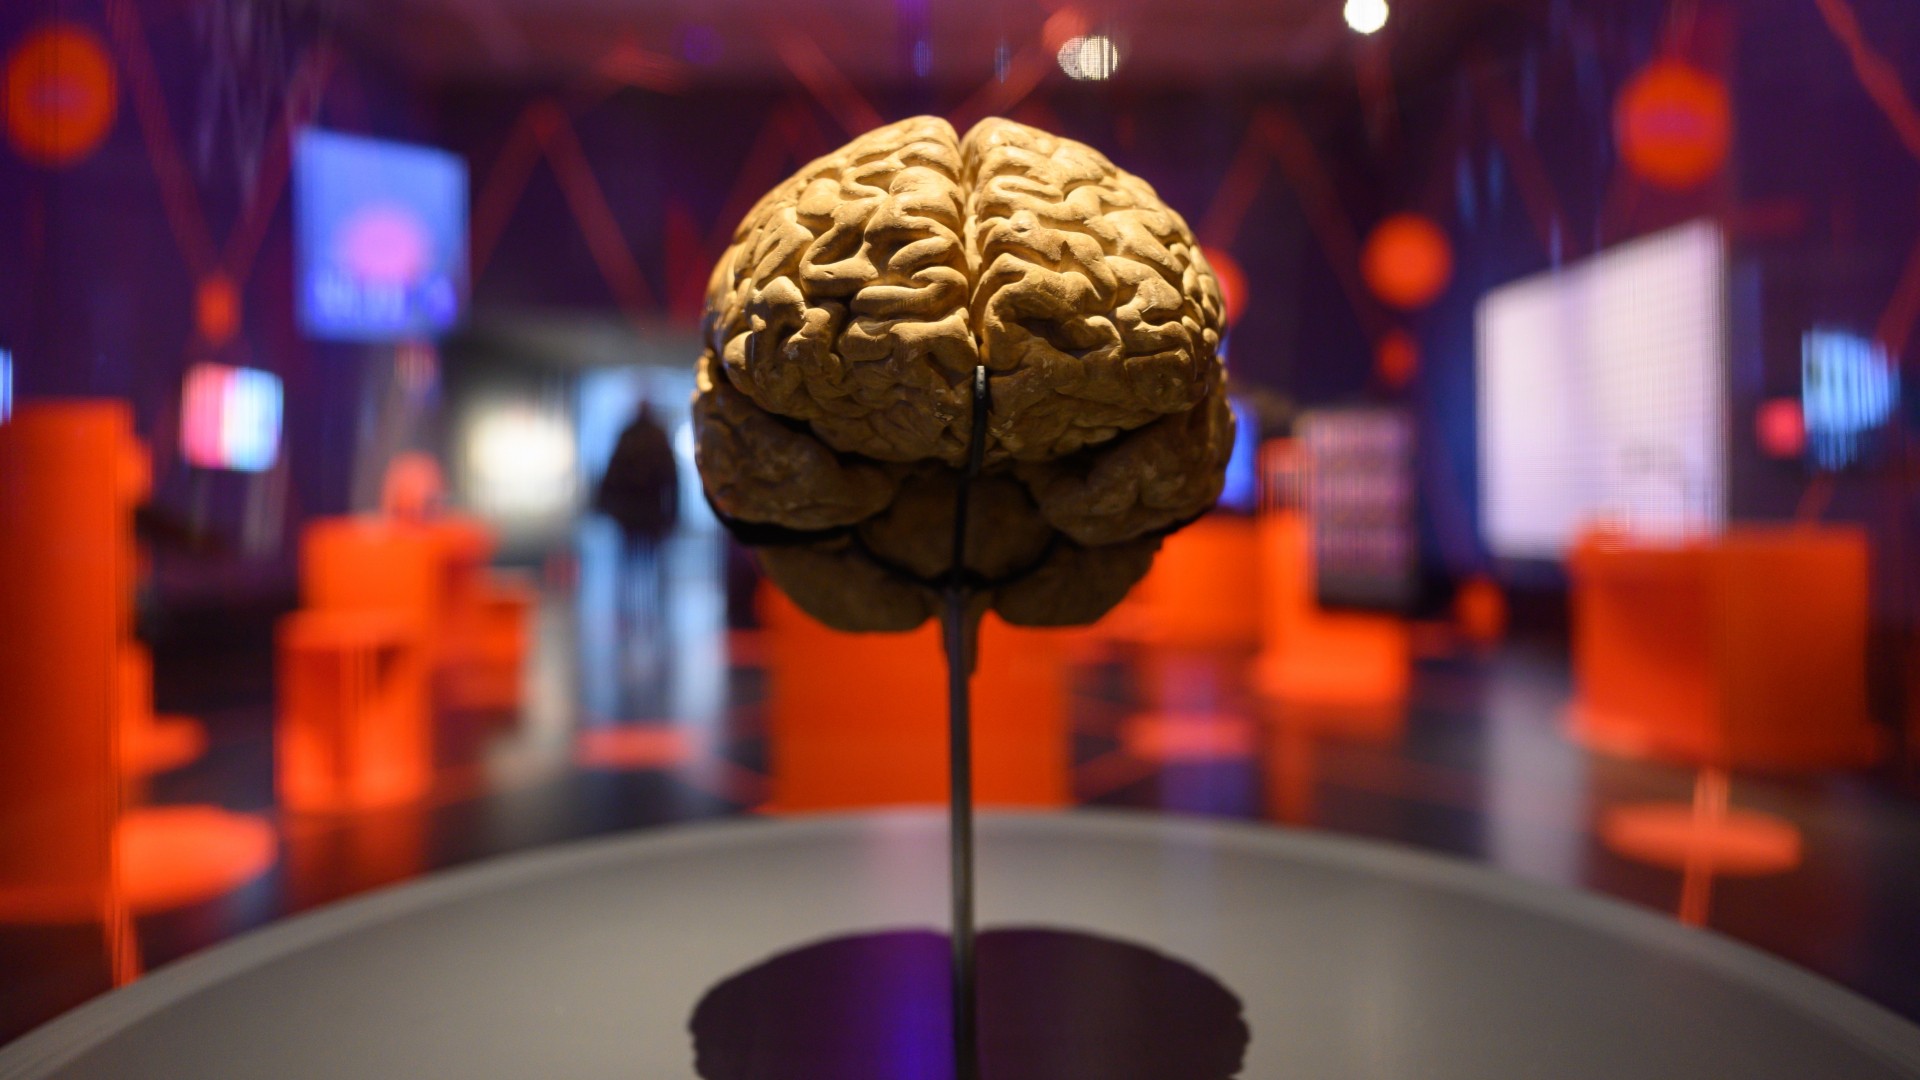 Modell eines menschlichen Gehirns